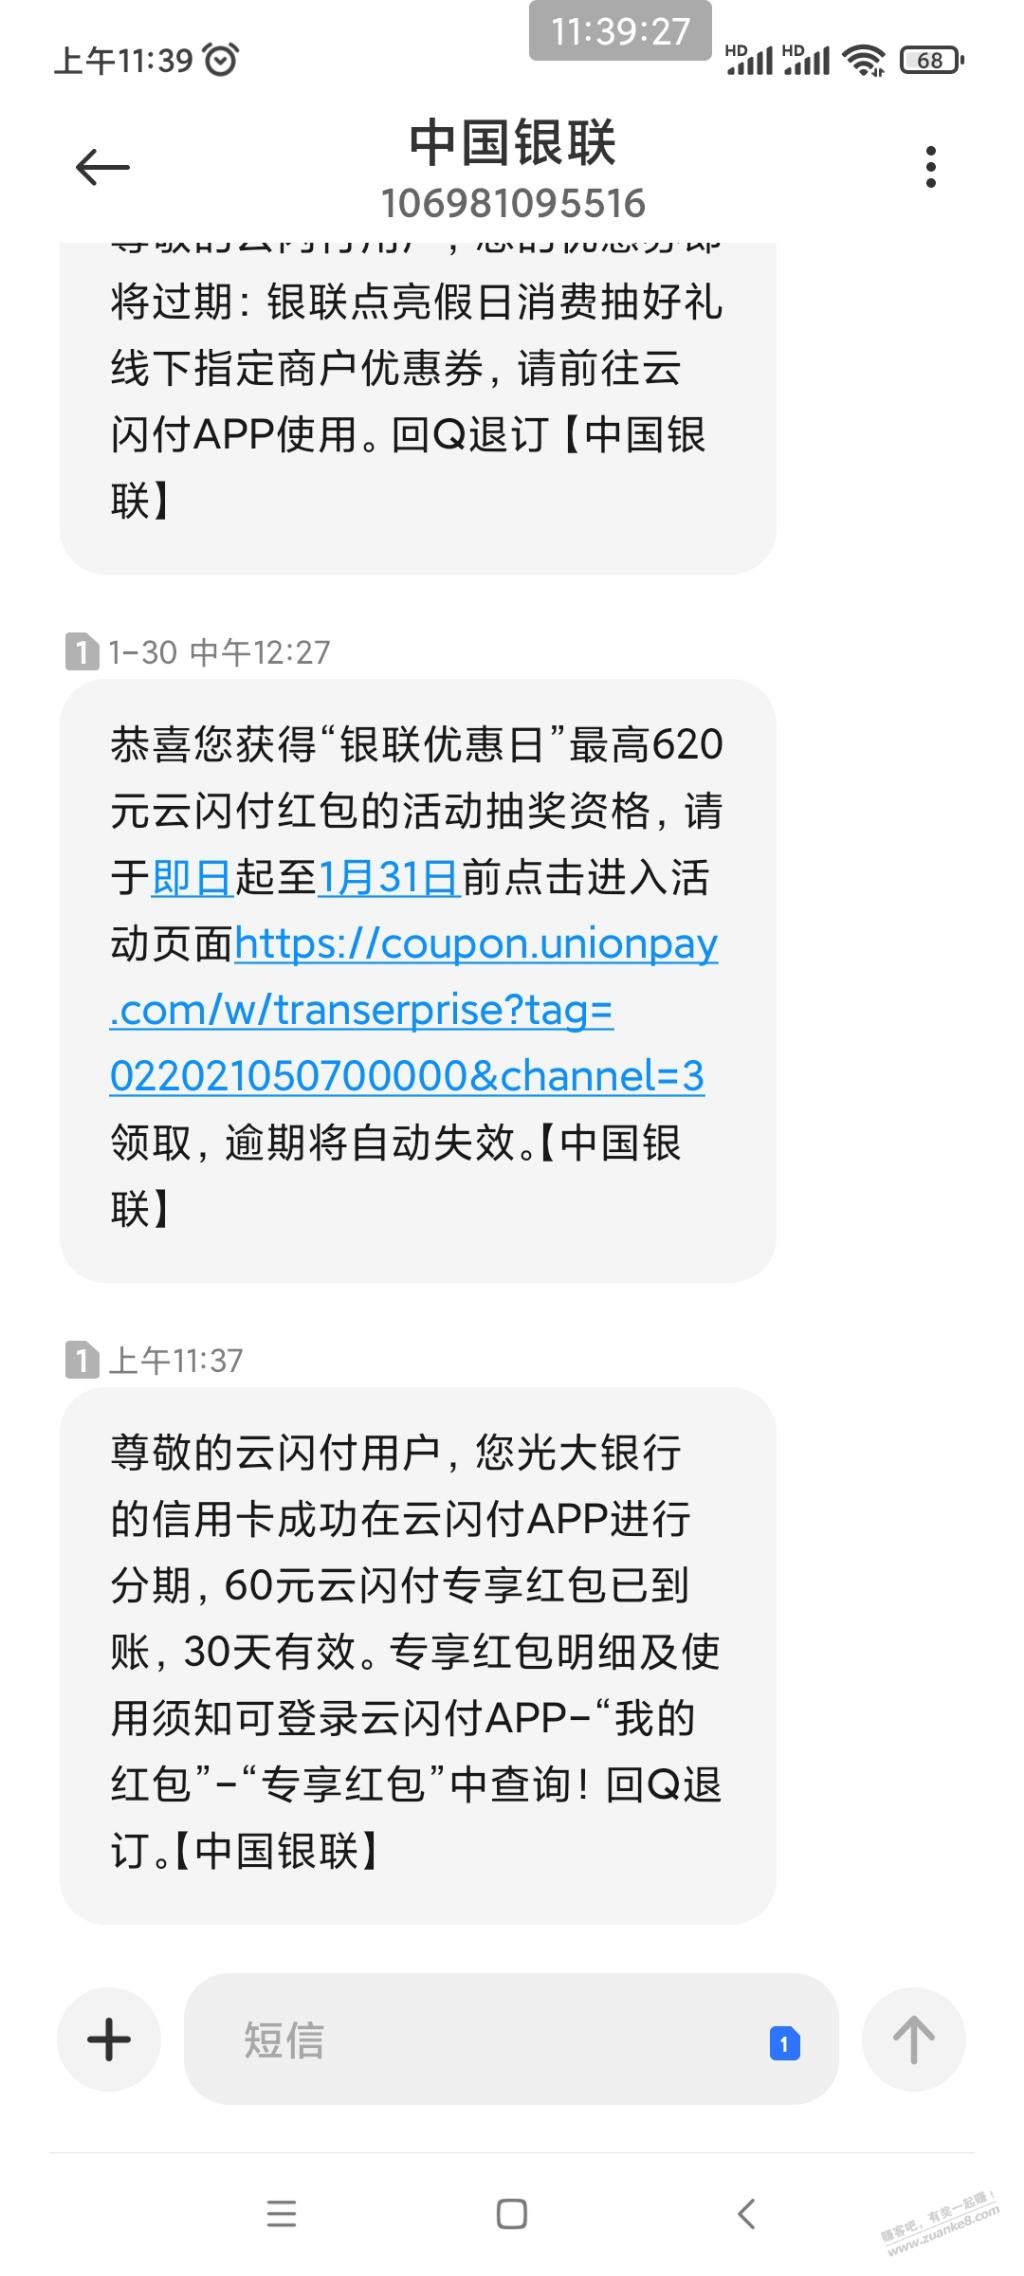 光大xing/用卡昨天分期100-短信说60到账-账户上没有-惠小助(52huixz.com)